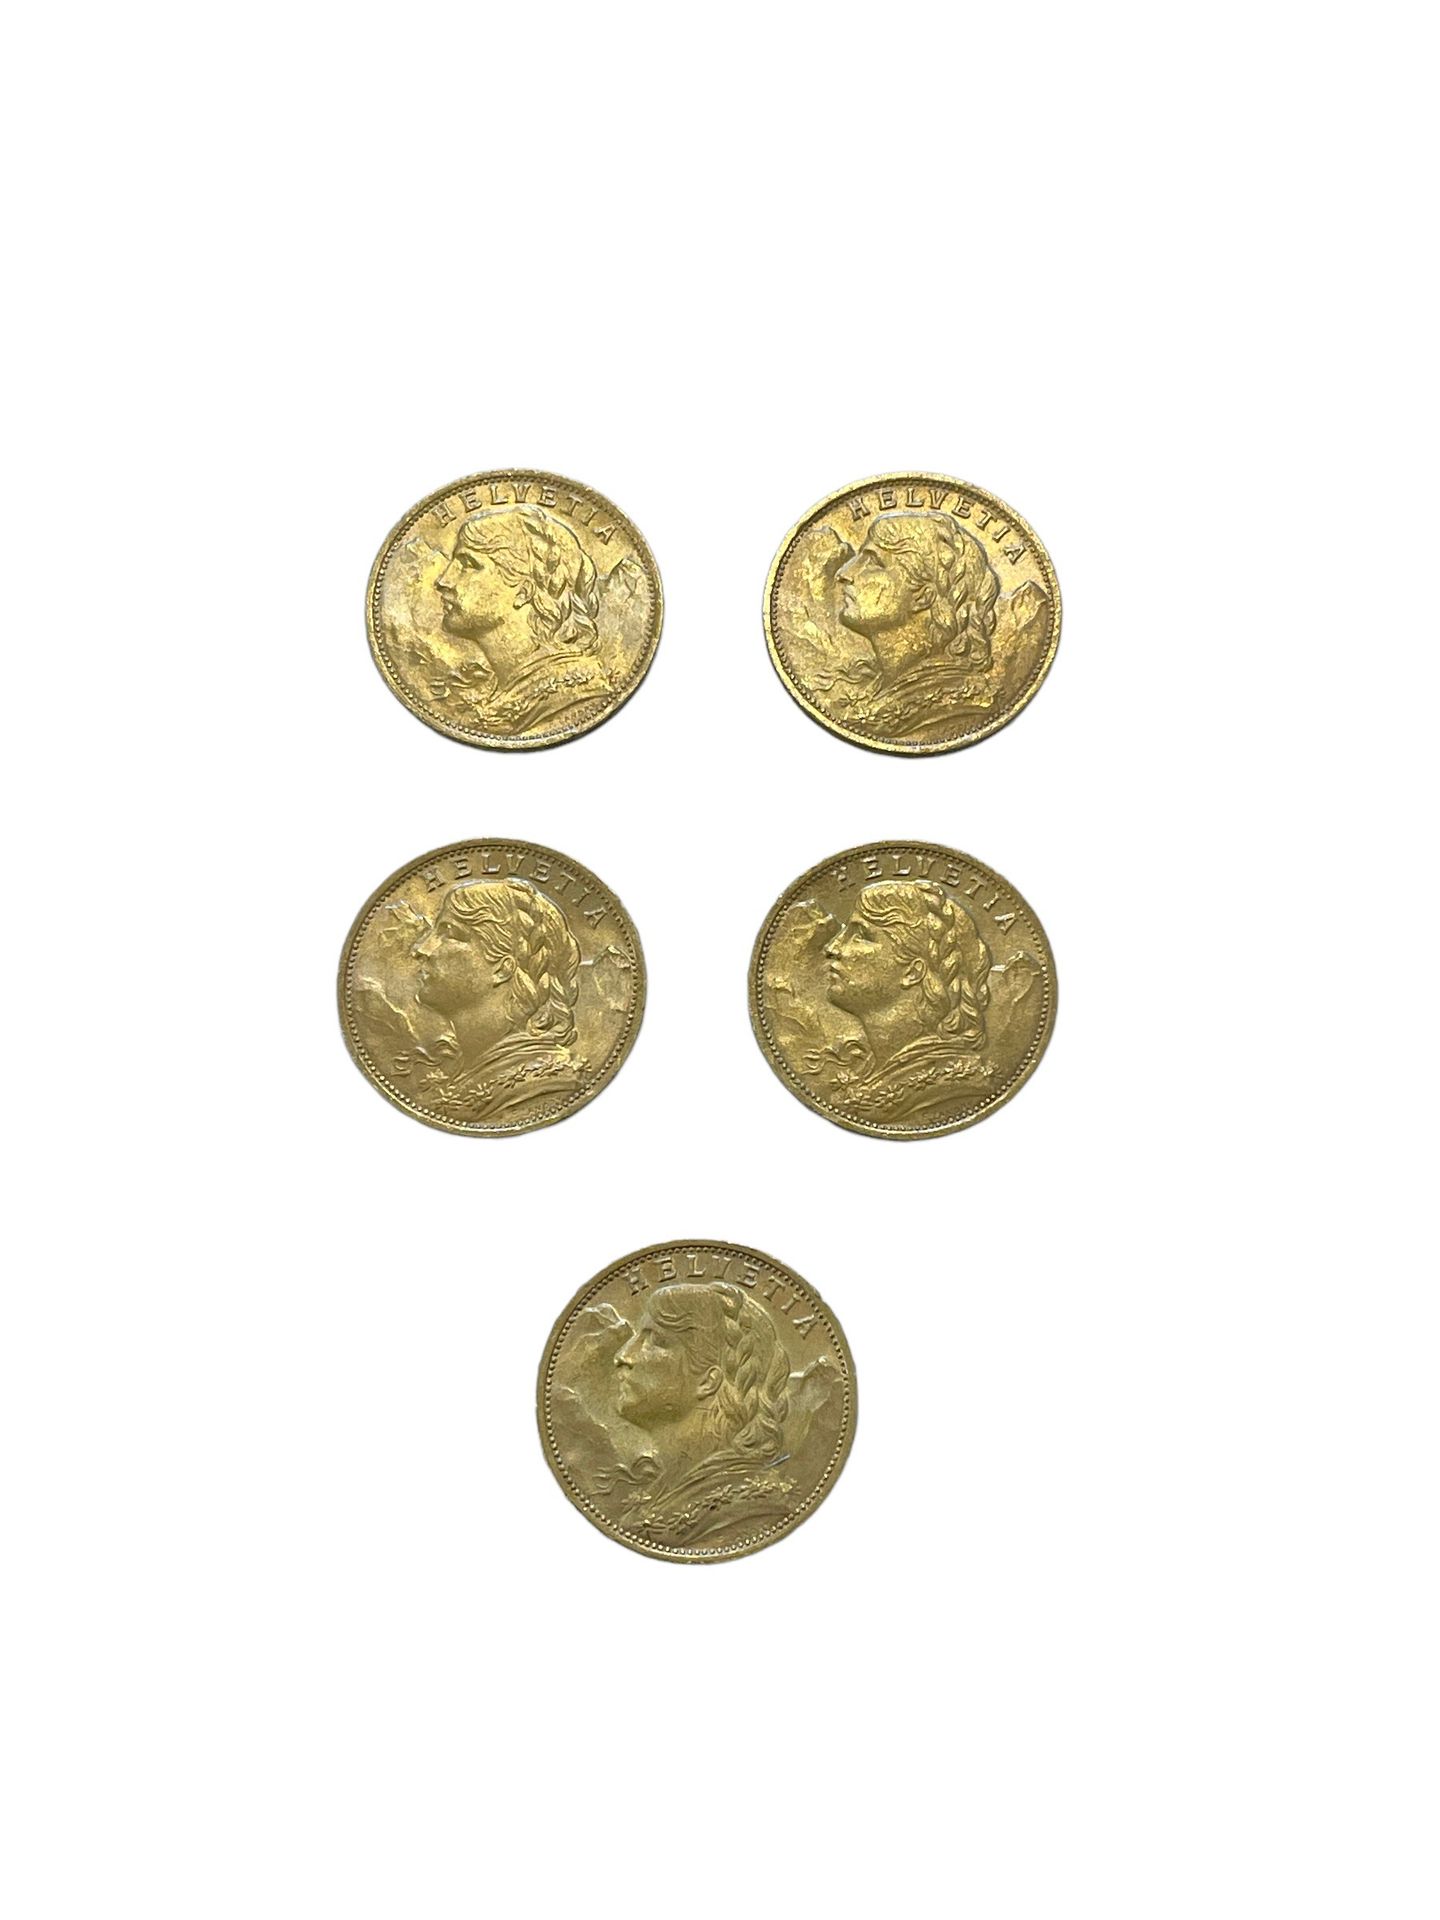 Null SCHWEIZ
5 Münzen 20 Franken Gold
Gewicht: 32.2 g